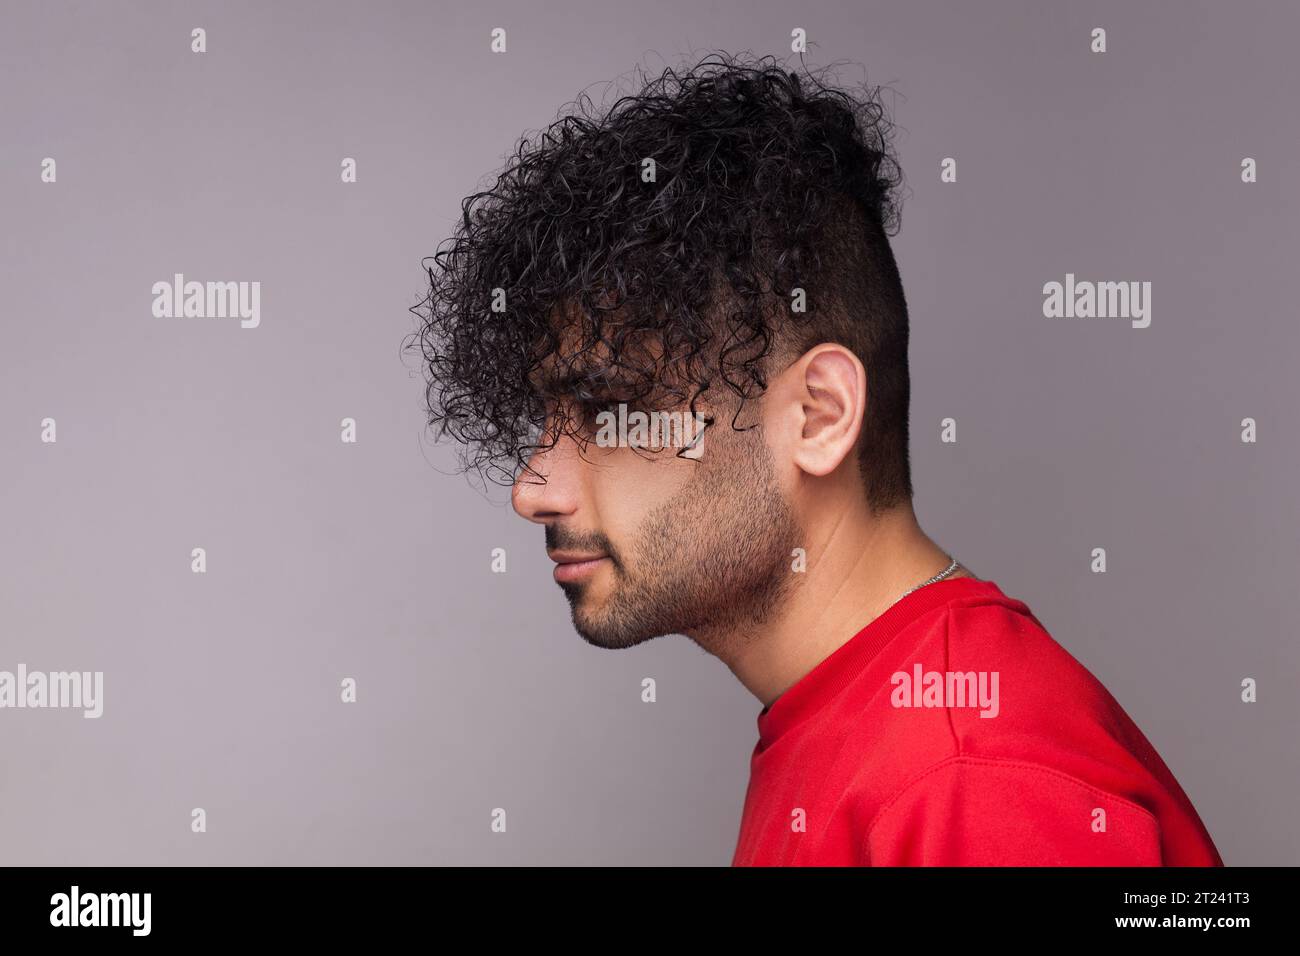 Seitliches Porträt eines attraktiven, hübschen jungen, bärtigen Mannes mit lockigen Haaren, der einen roten Pullover trägt, nach vorne blickt und seine Frisur zeigt. Innenstudio isoliert auf grauem Hintergrund. Stockfoto